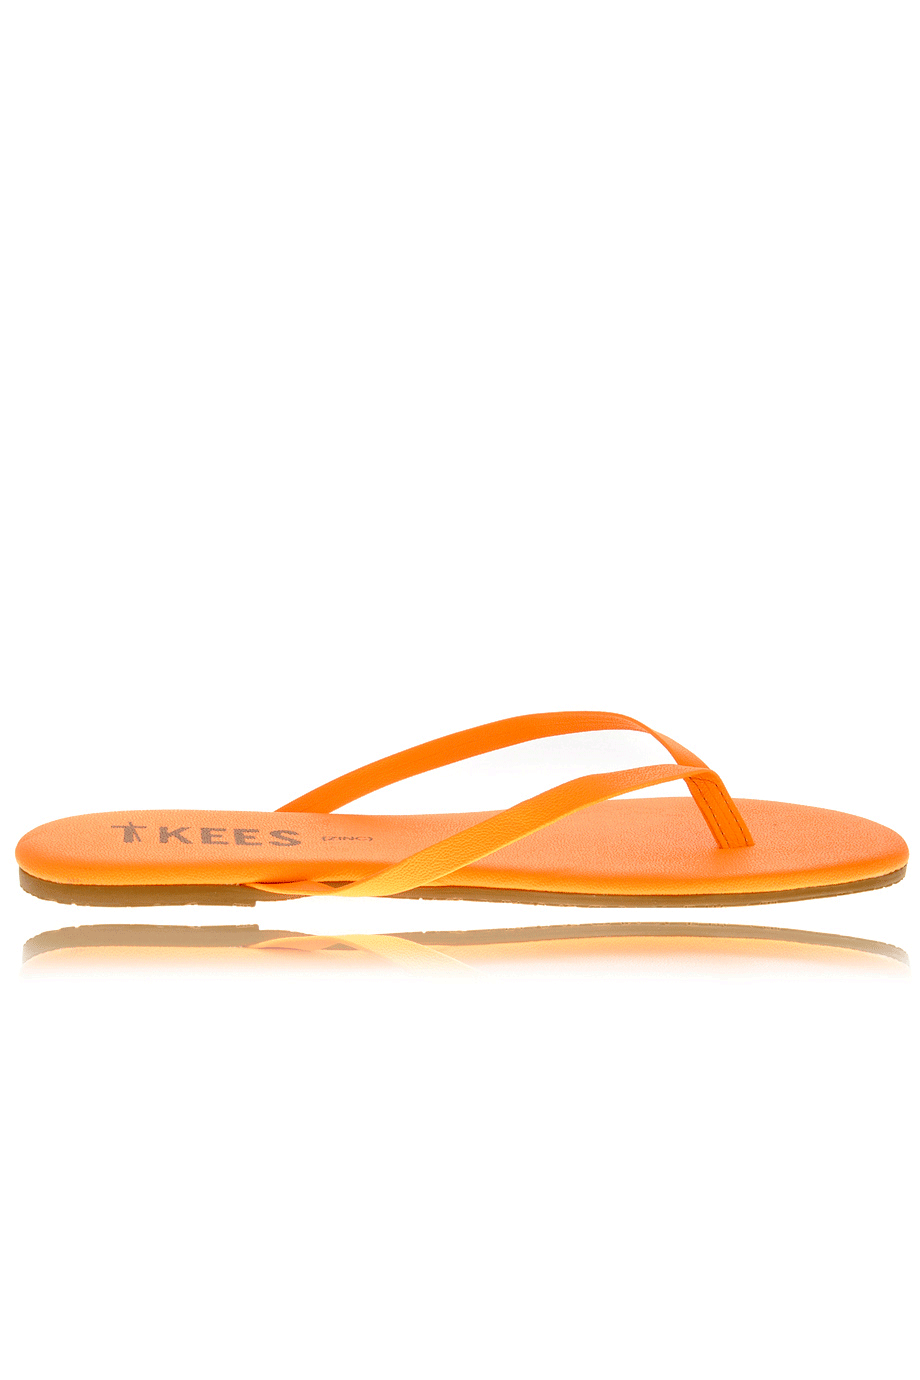 Πορτοκαλί Δερμάτινα Σανδάλια - Tkees | Γυναικεία Παπούτσια